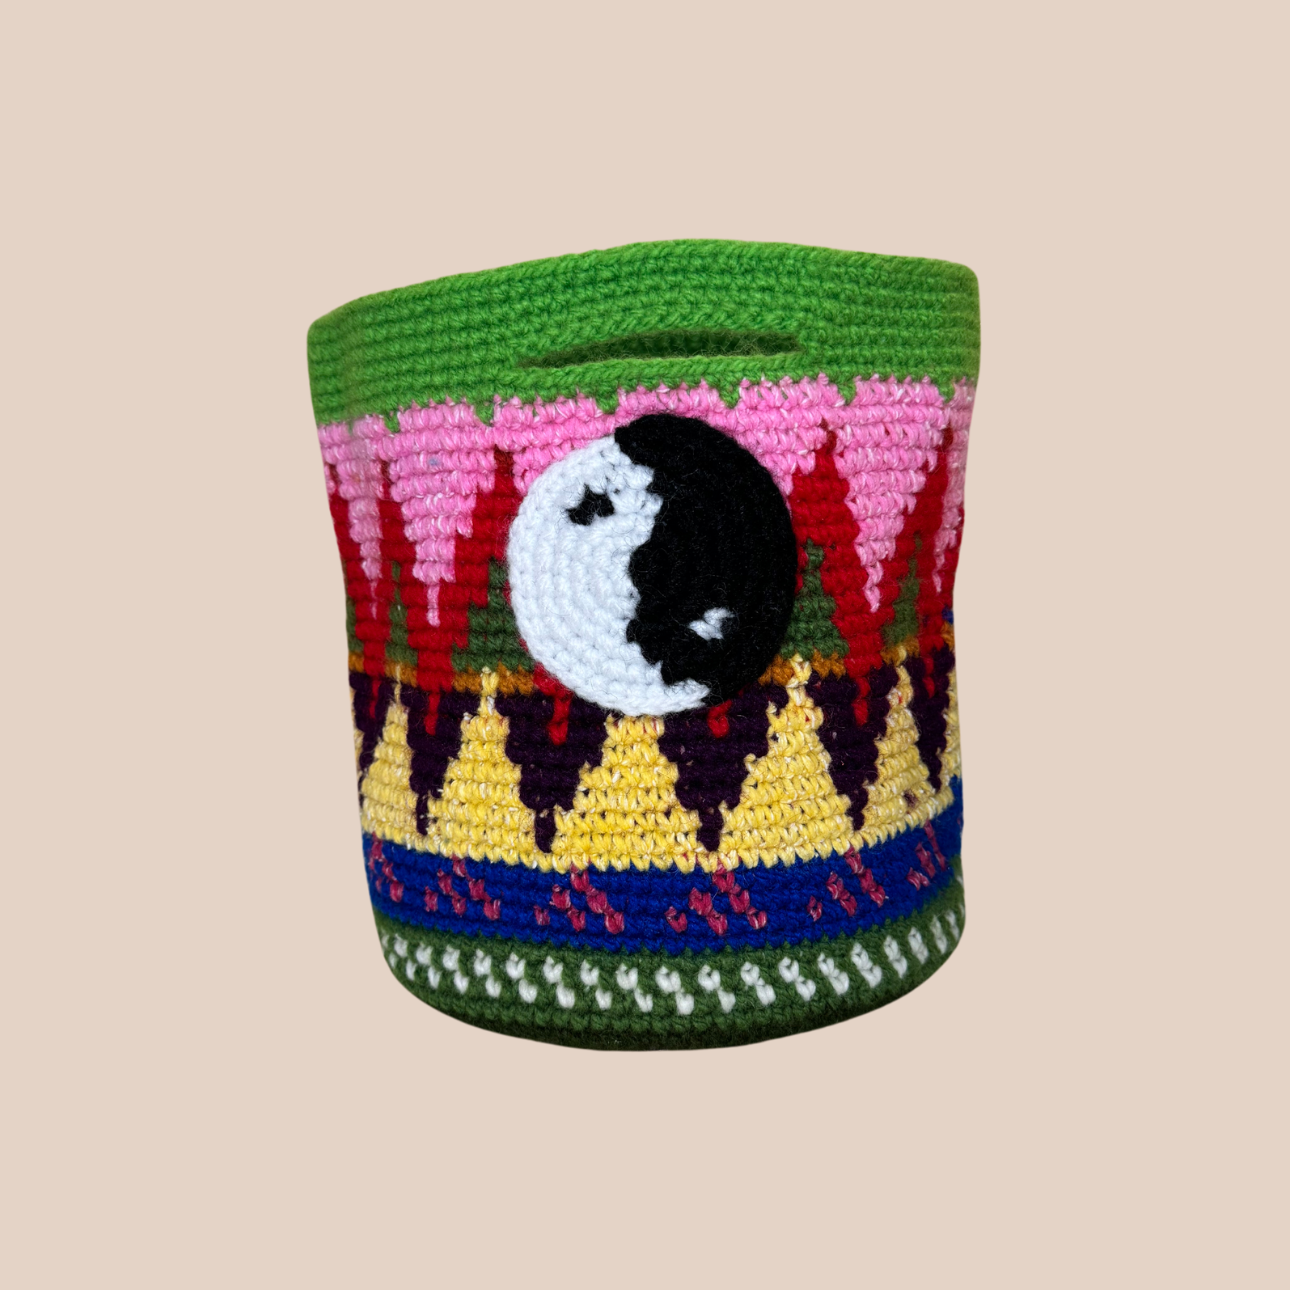  Image du sac motifs yin yang de Maison Badigo, sac en laine crocheté multicolore unique et tendance